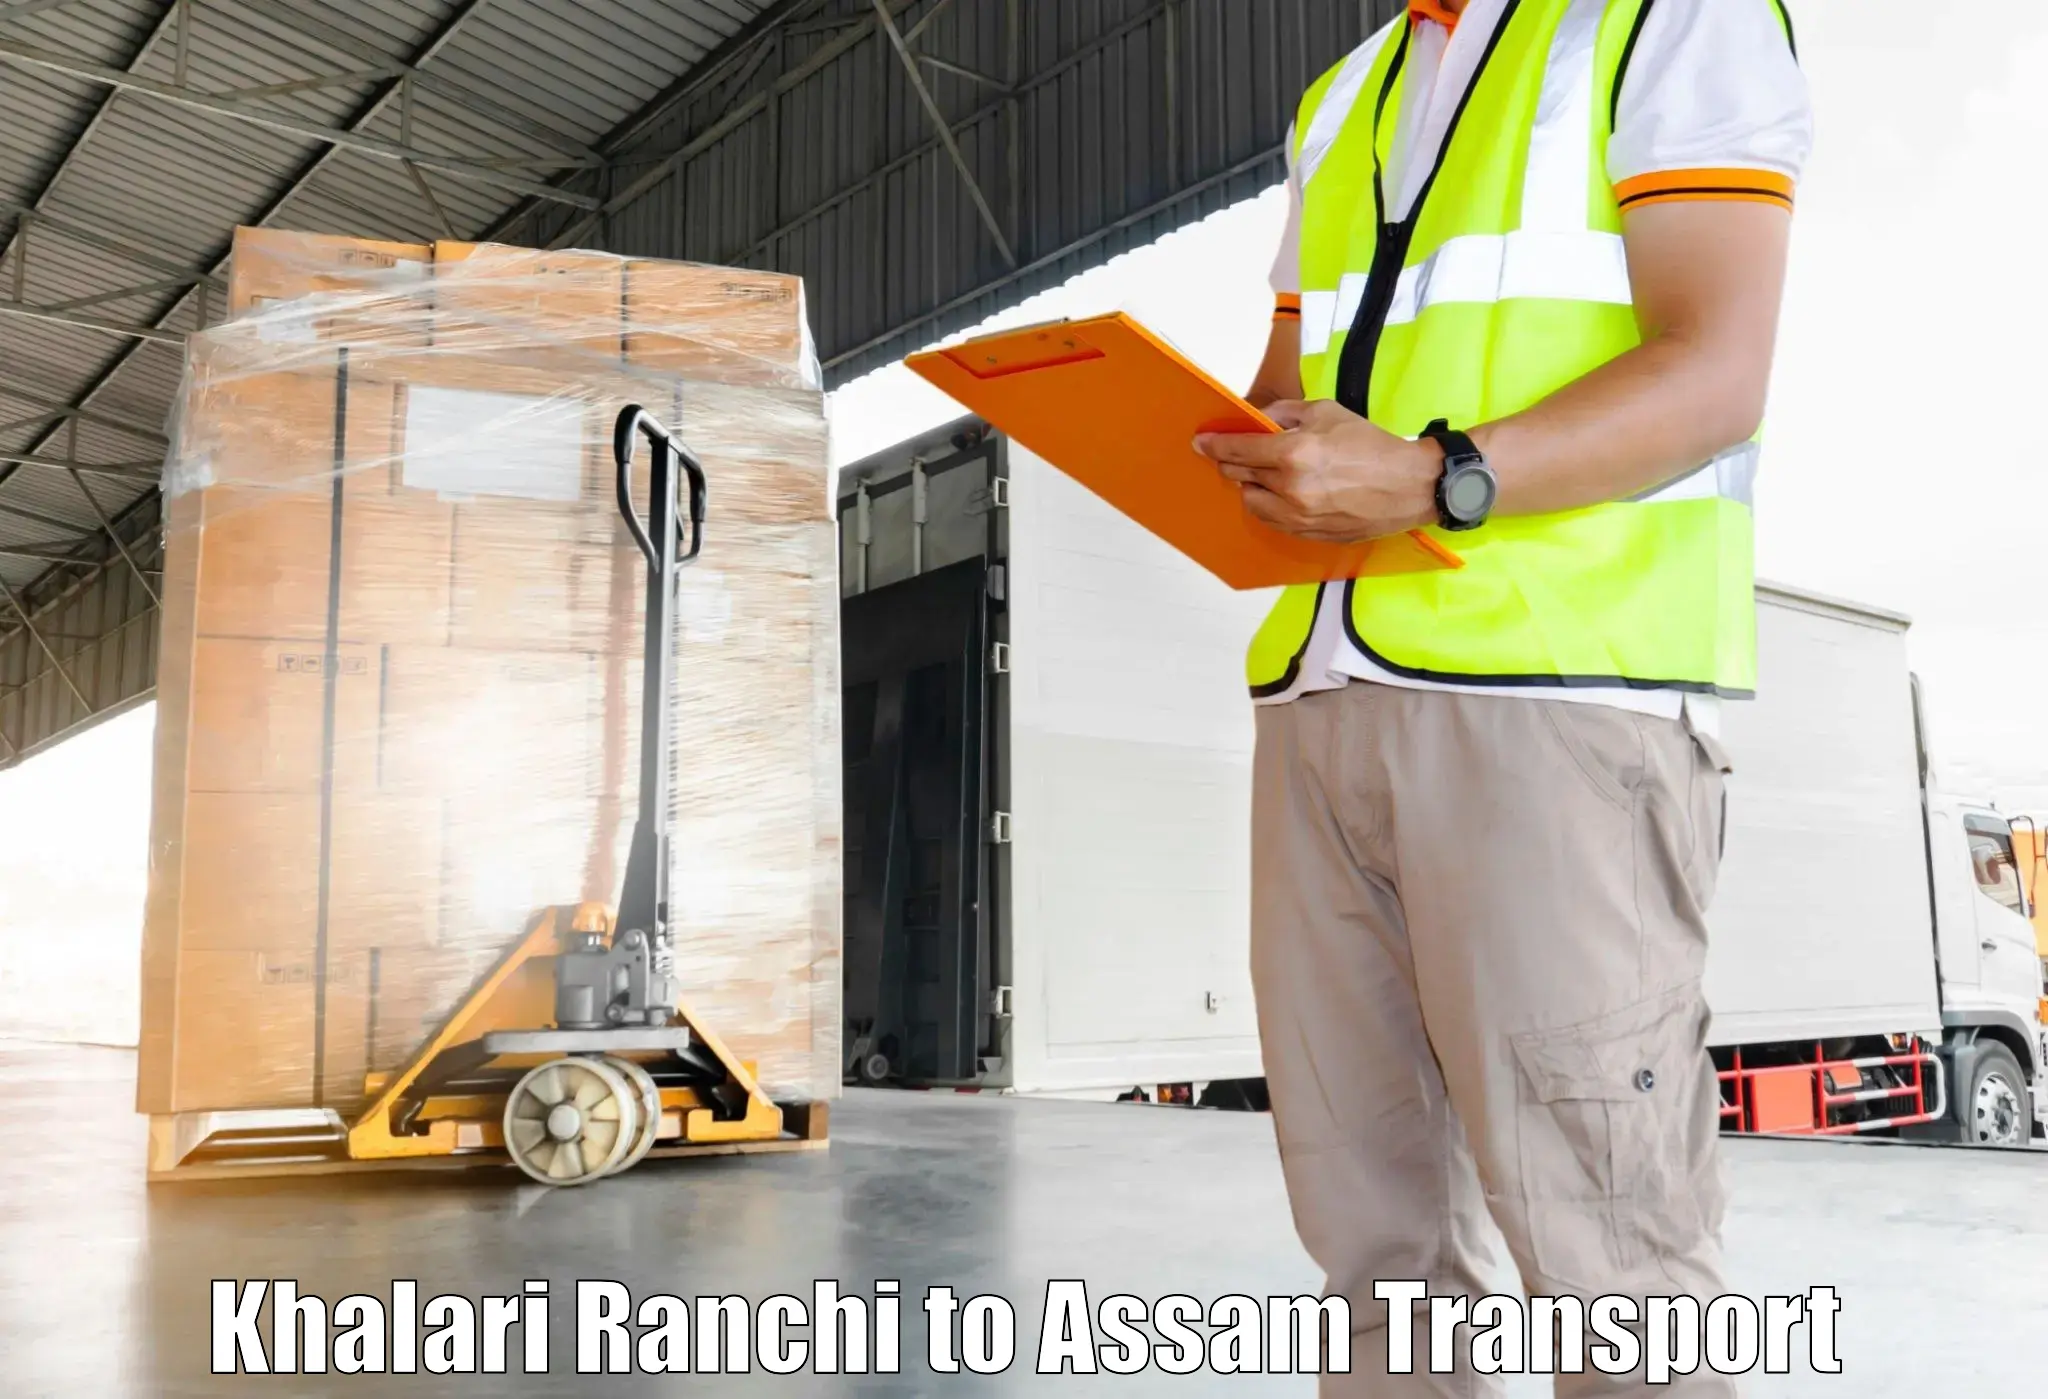 Bike shipping service Khalari Ranchi to Mayang